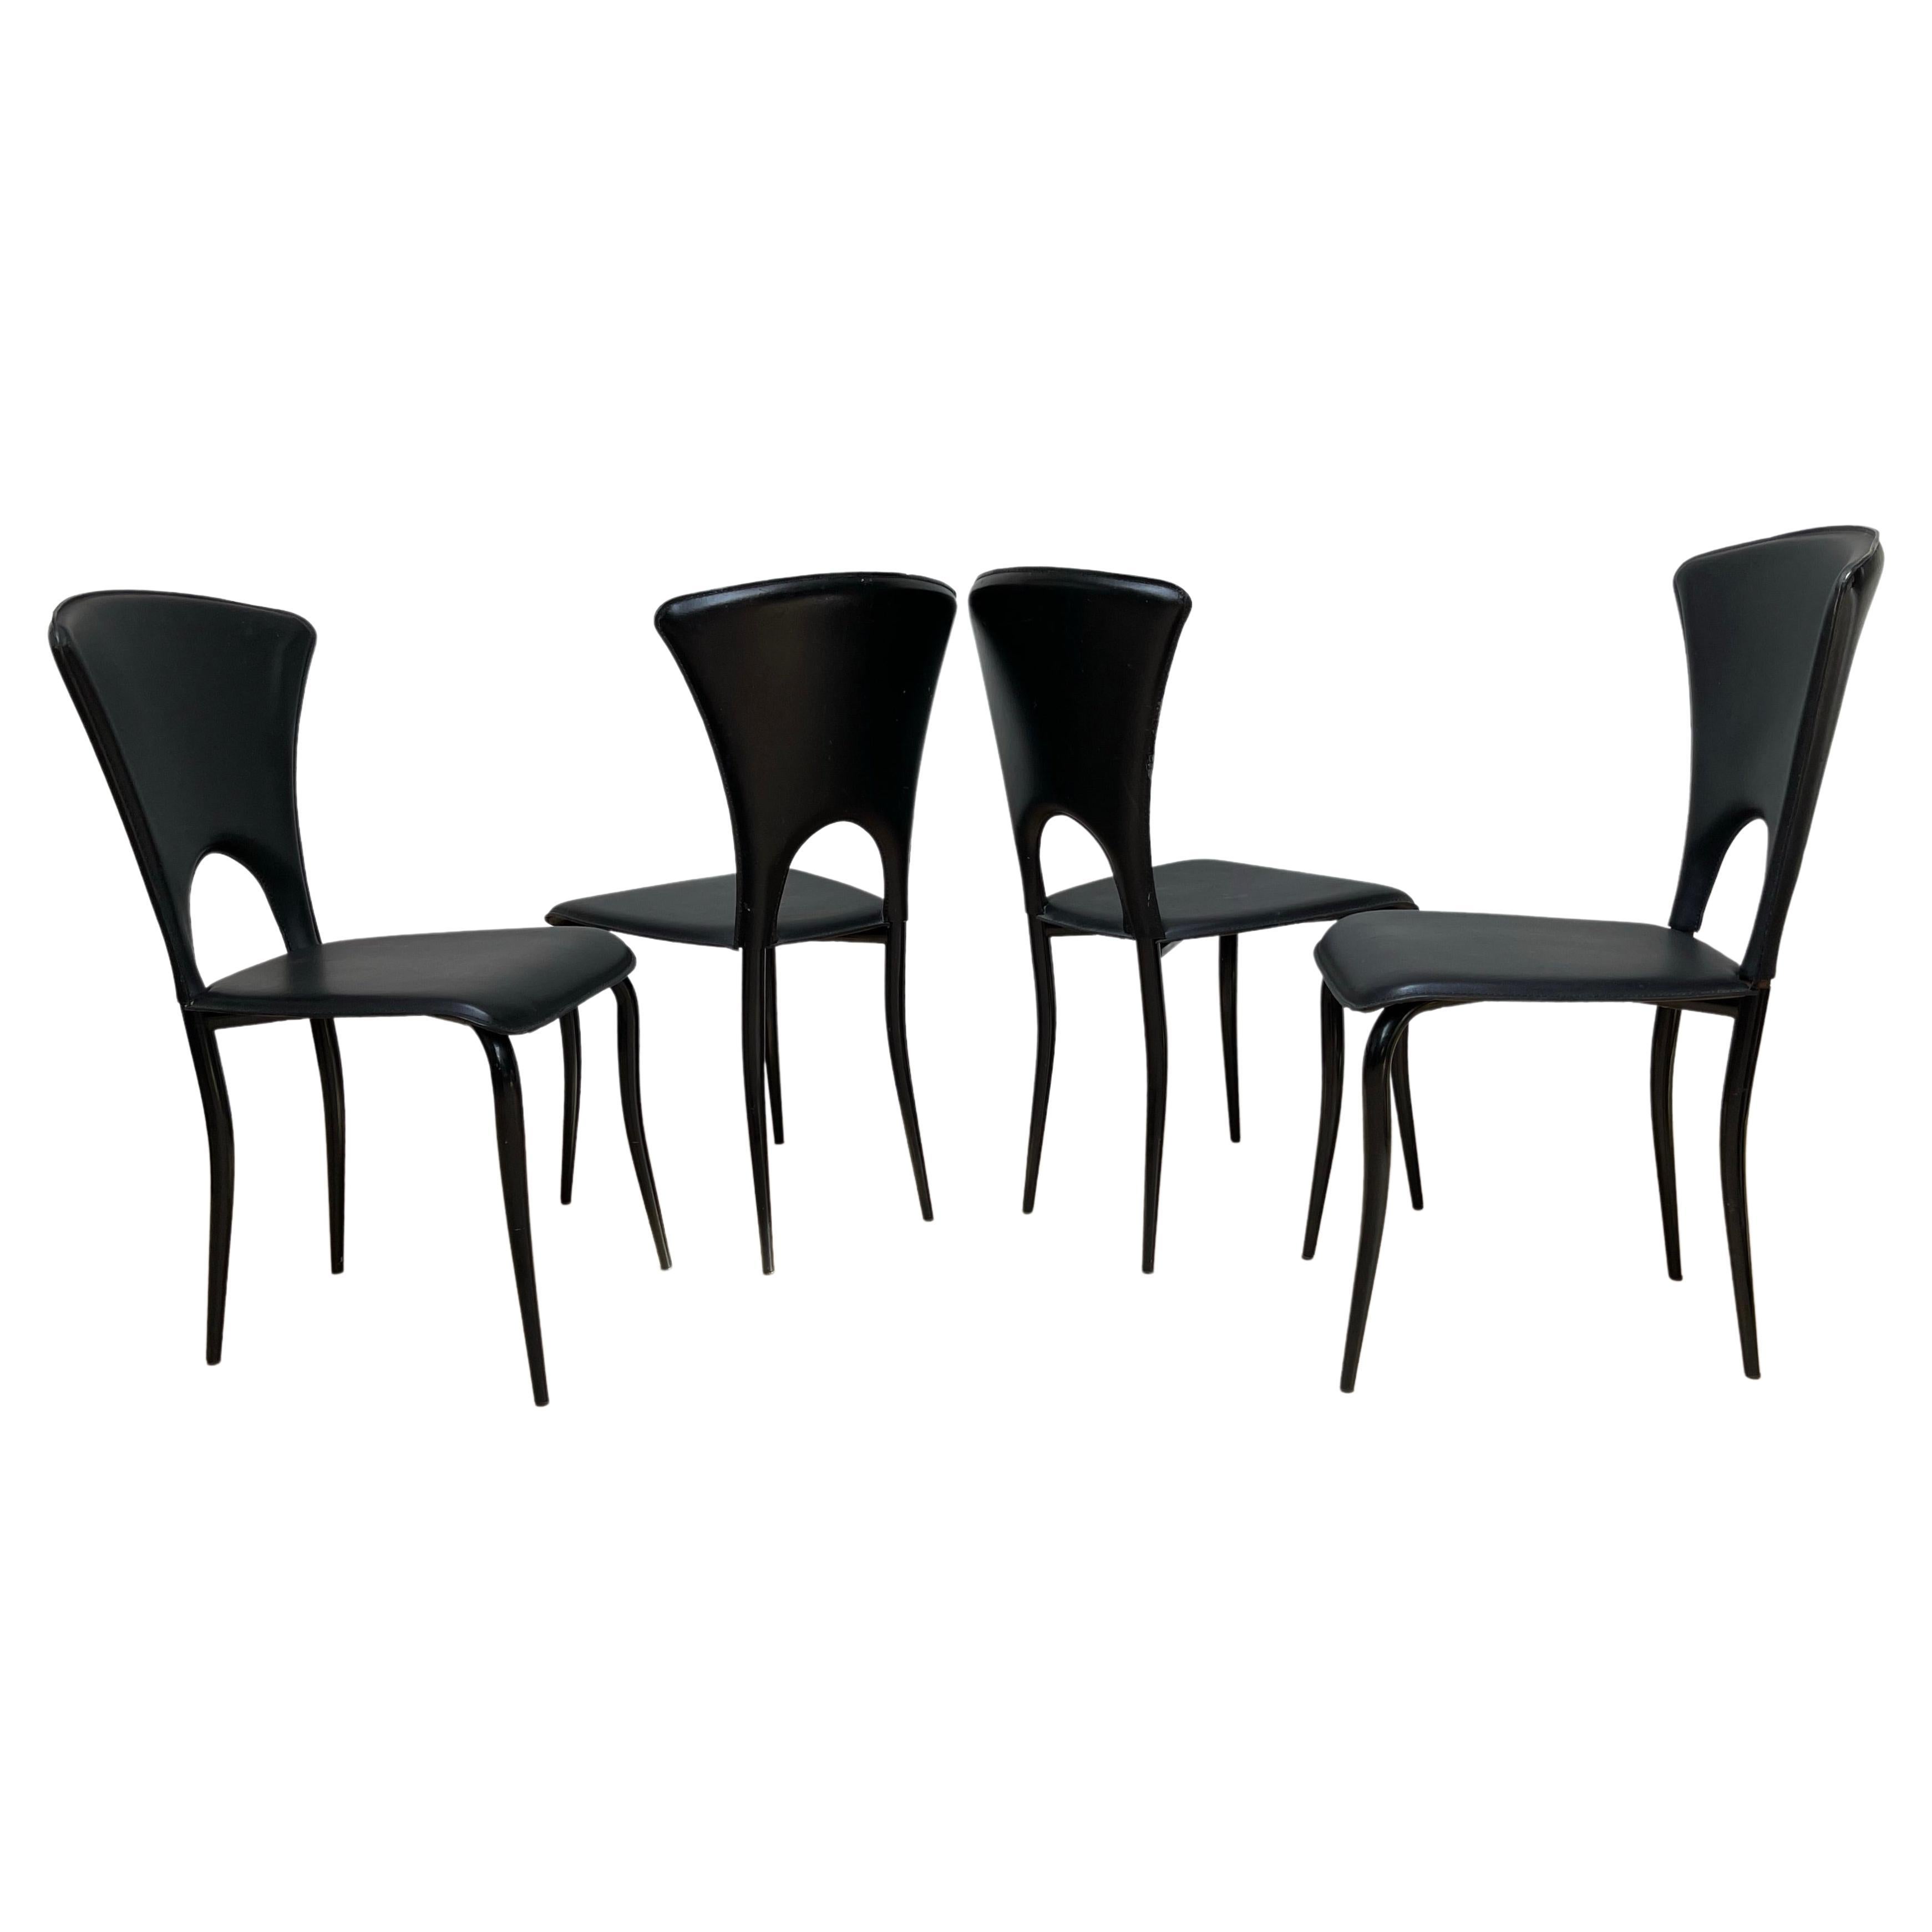 Italienisches Design Mid-Century Modern Satz von 4 Esszimmerstühlen w. Schwarze Ledersitze